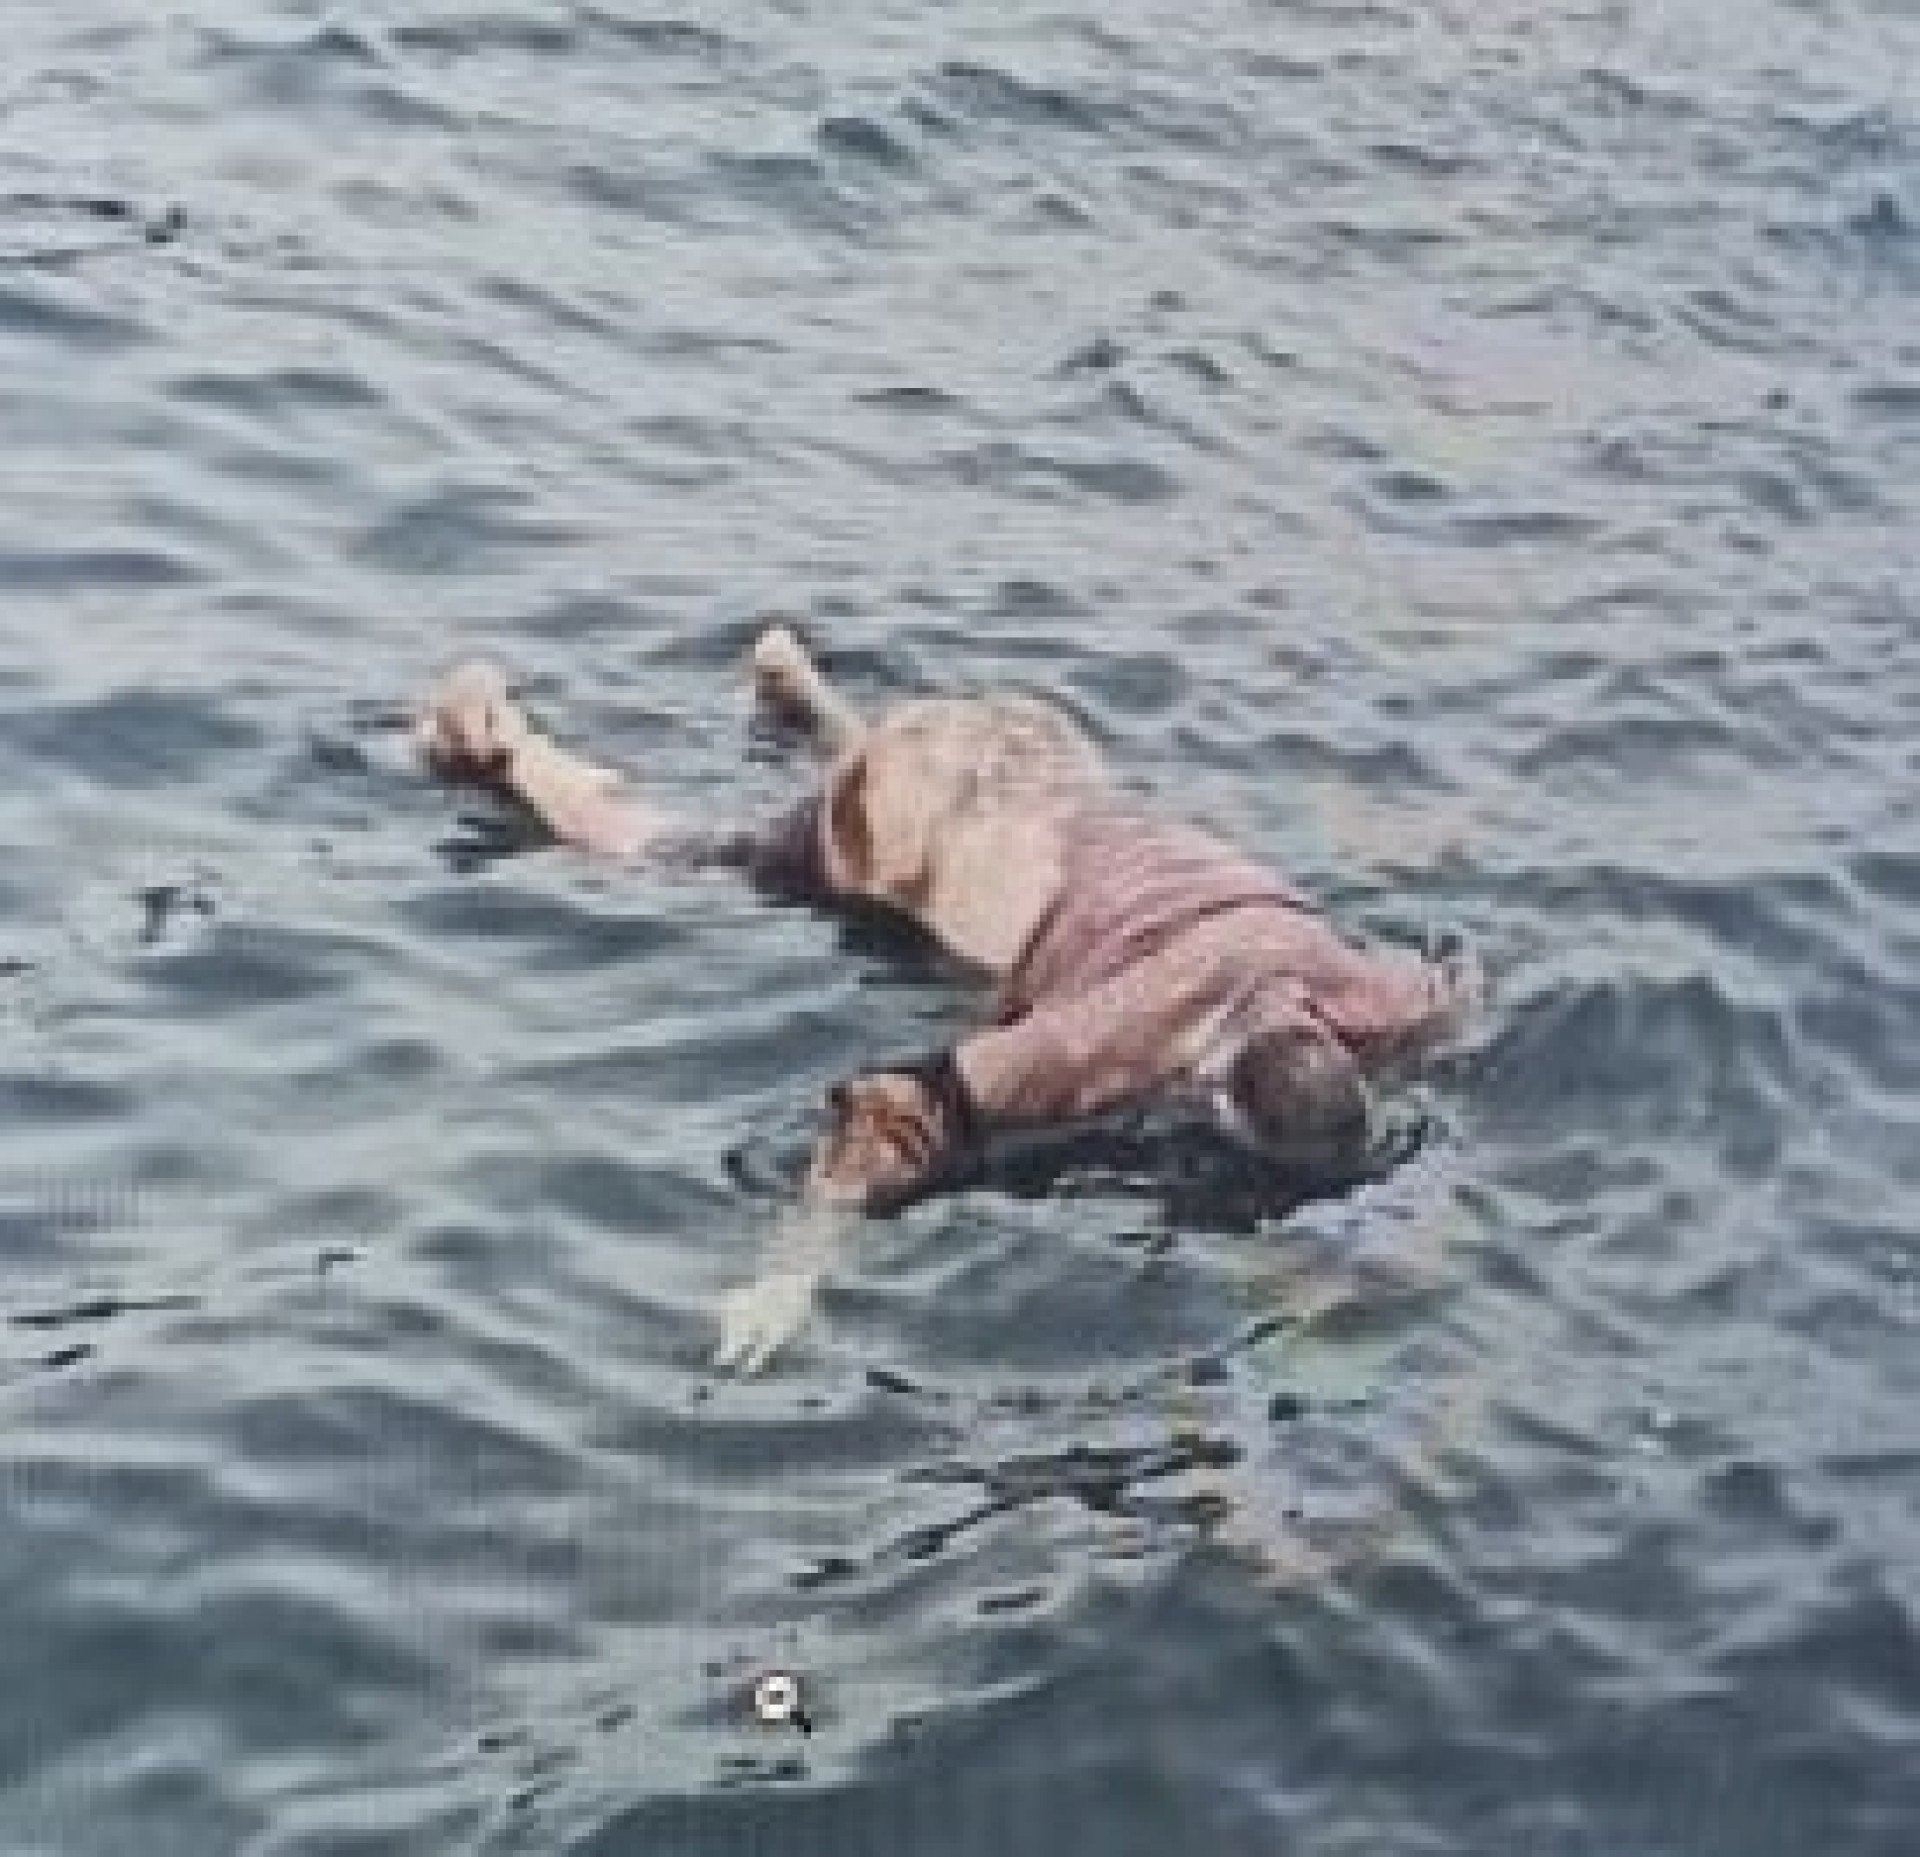 Corpo do mestre da lancha desaparecido há cinco dias é retirado do mar pelos Bombeiros - Divulgação